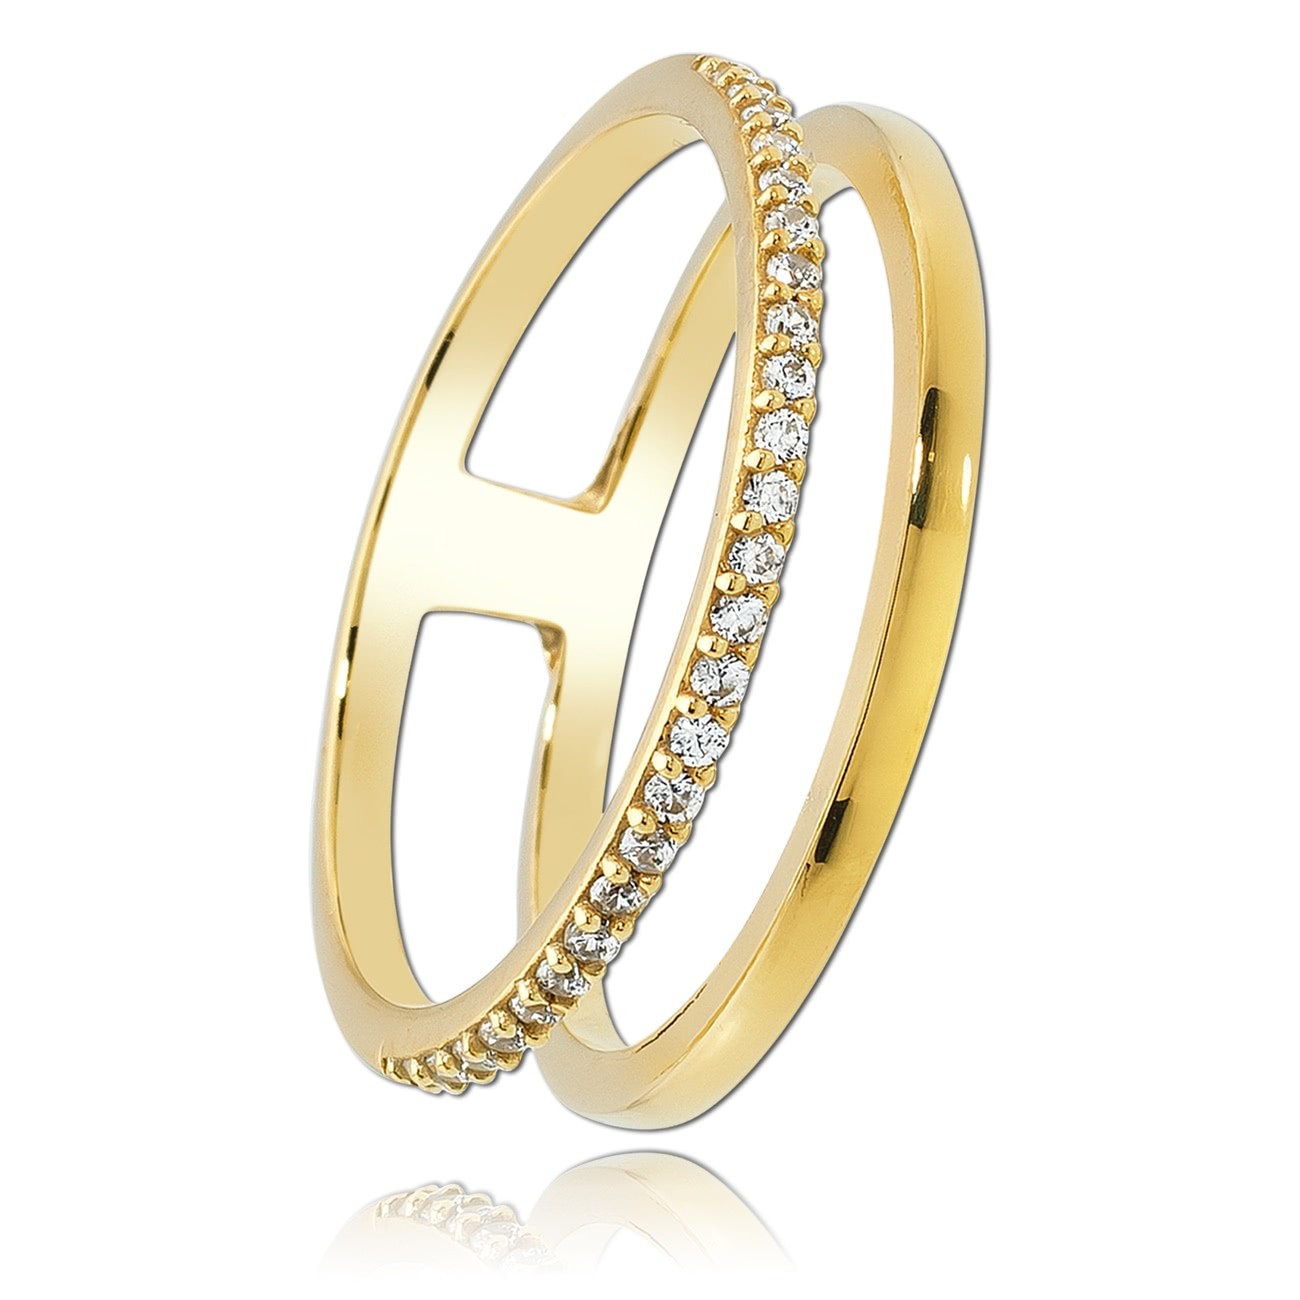 Balia Damen Ring aus 333 Gelbgold mit Zirkonia Gr.56 BGR015G56